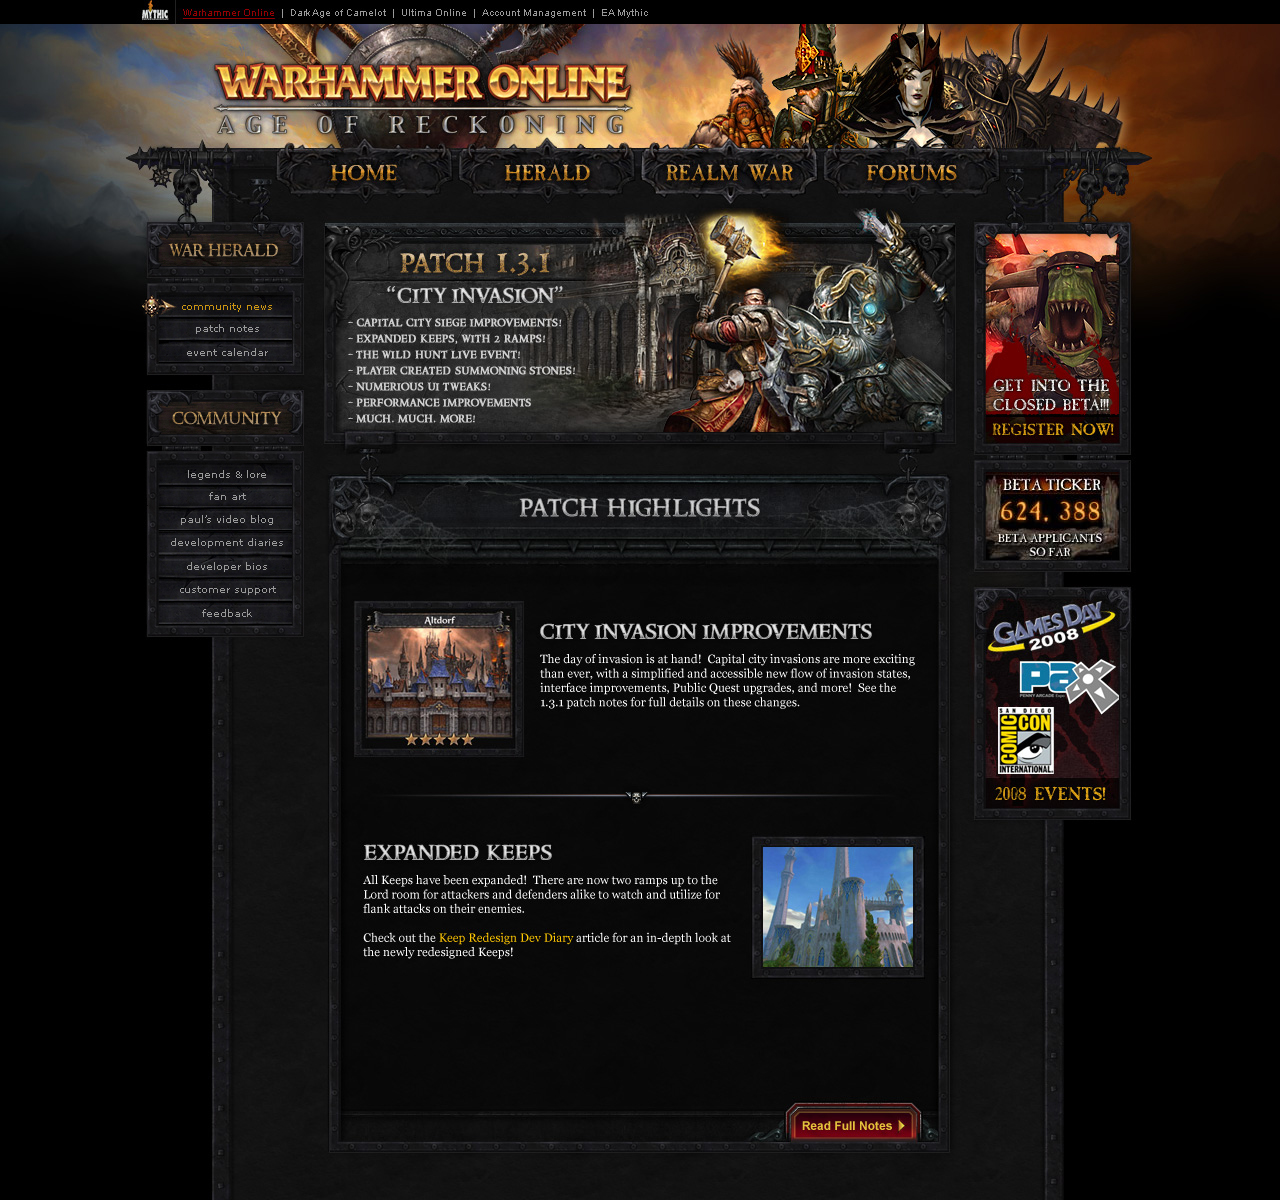 Warhammer Online - Design Refresh - Patch Notes Display